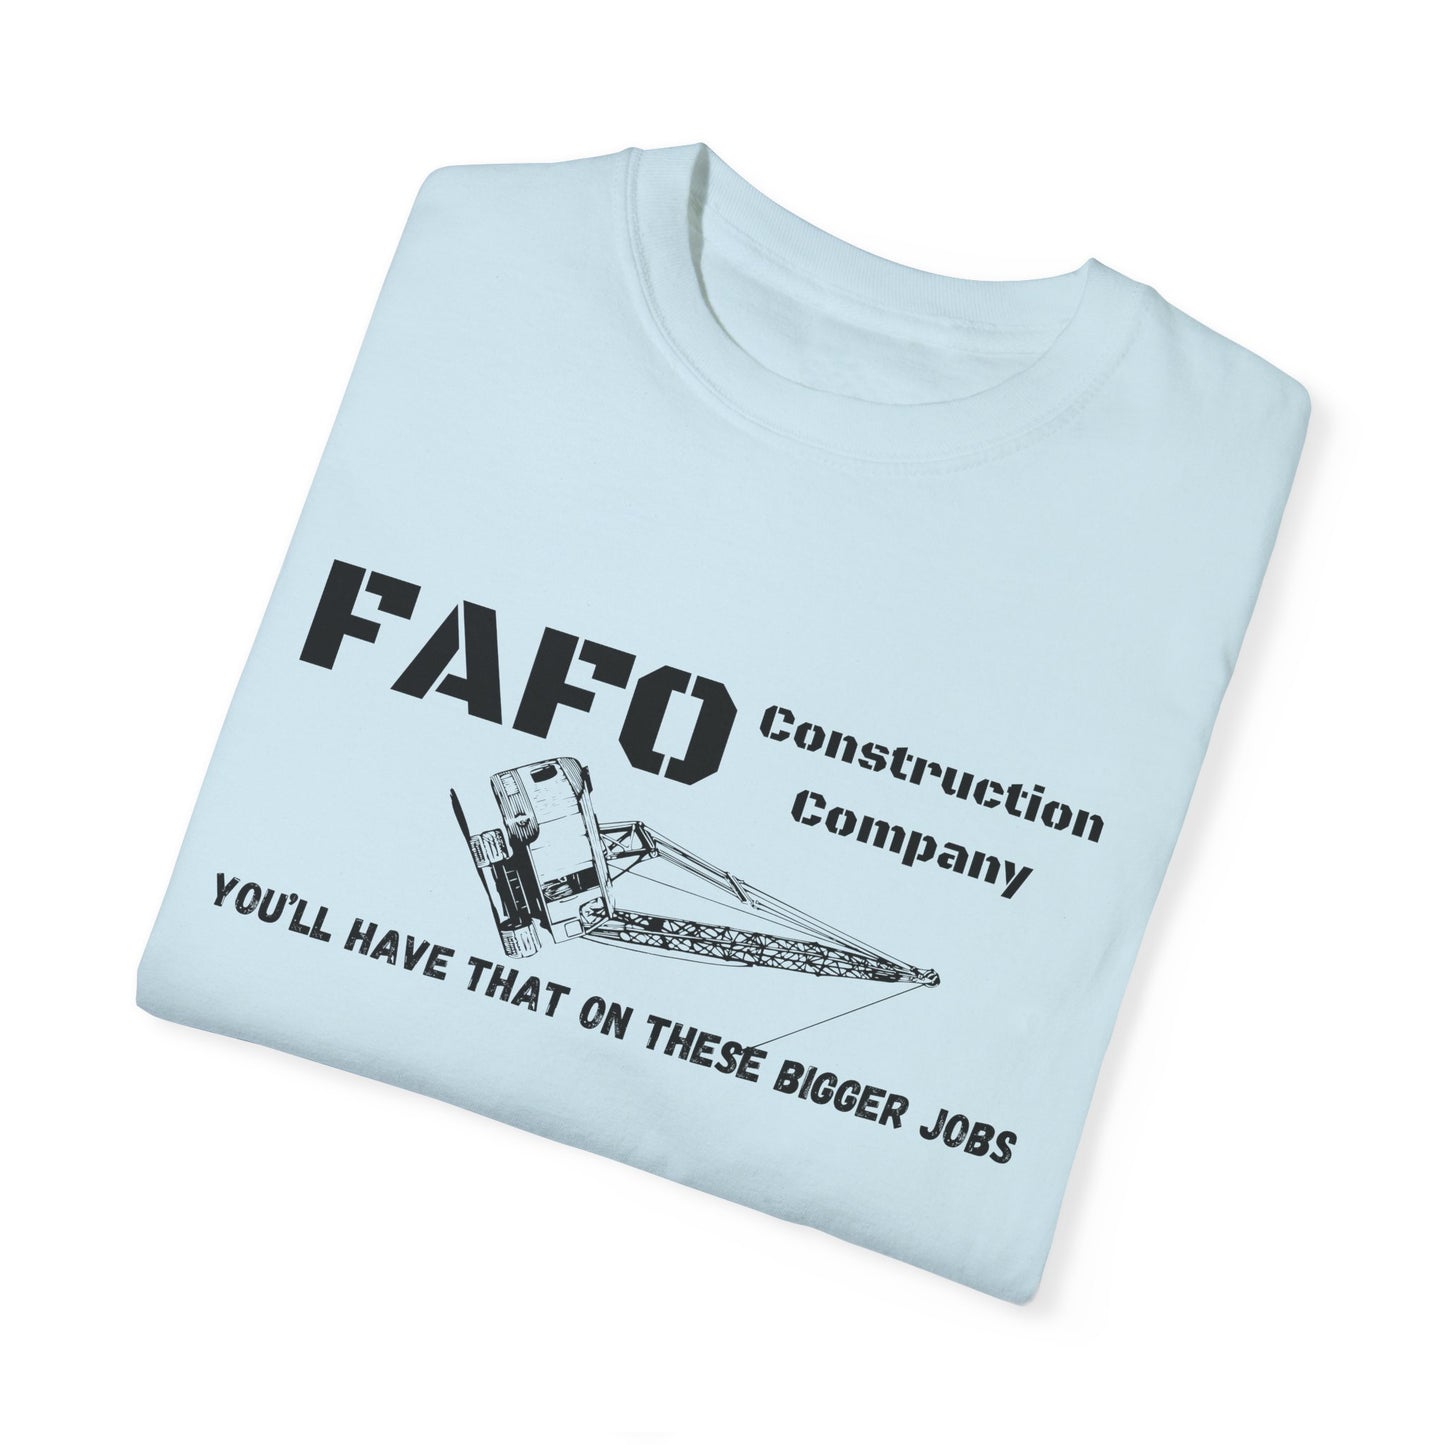 FAFO Construction Company T-shirt